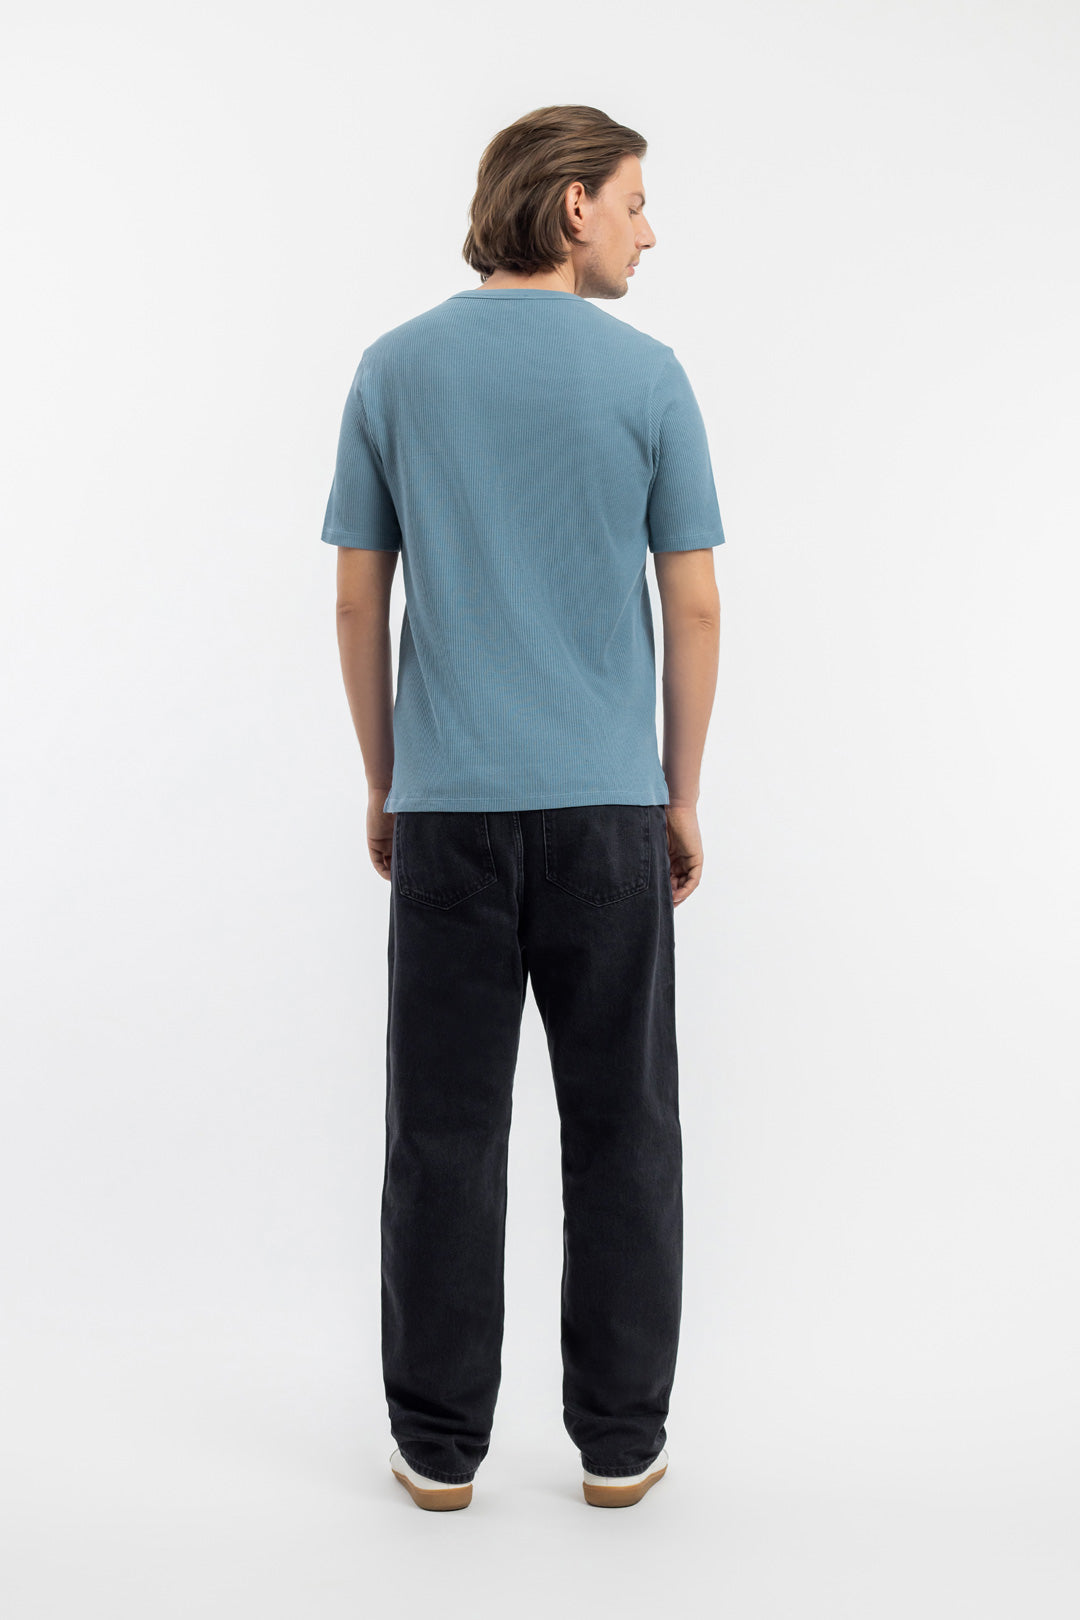 Blaues T-Shirt Waffel aus 100% Bio-Baumwolle von Rotholz